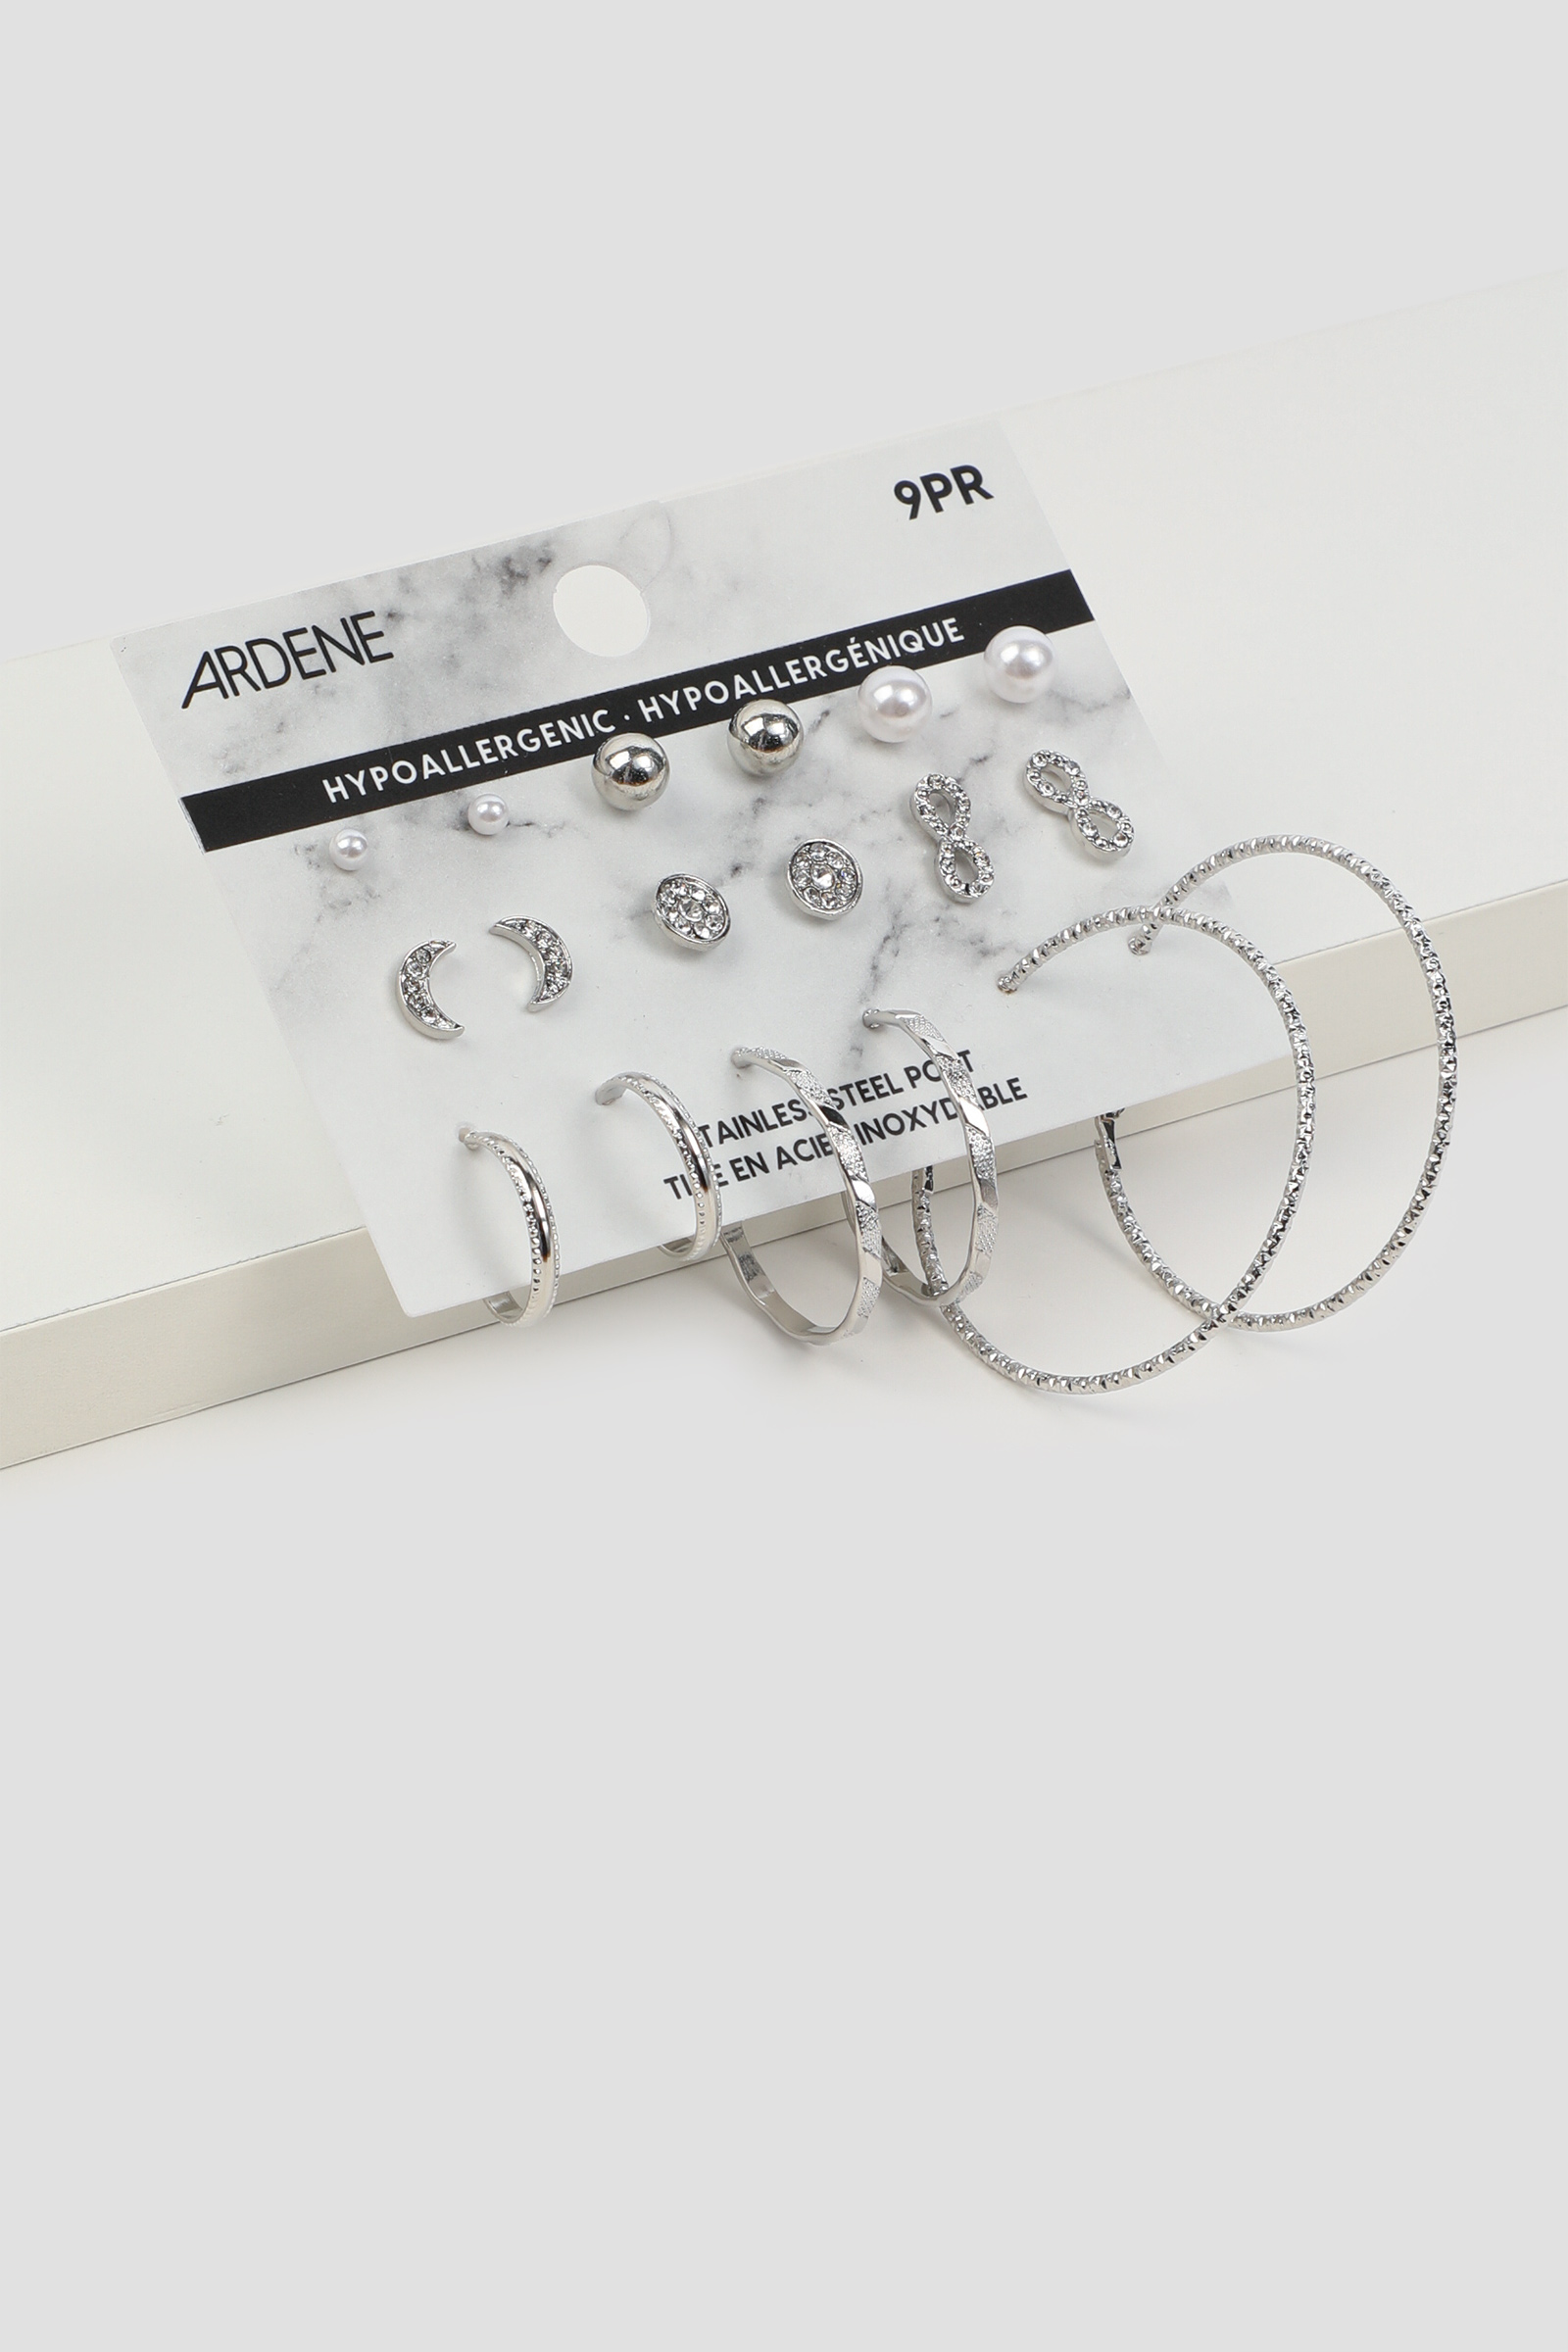 Ardene 9-Pack Assorted Stud & Hoop Earrings in Silver | Stainless Steel